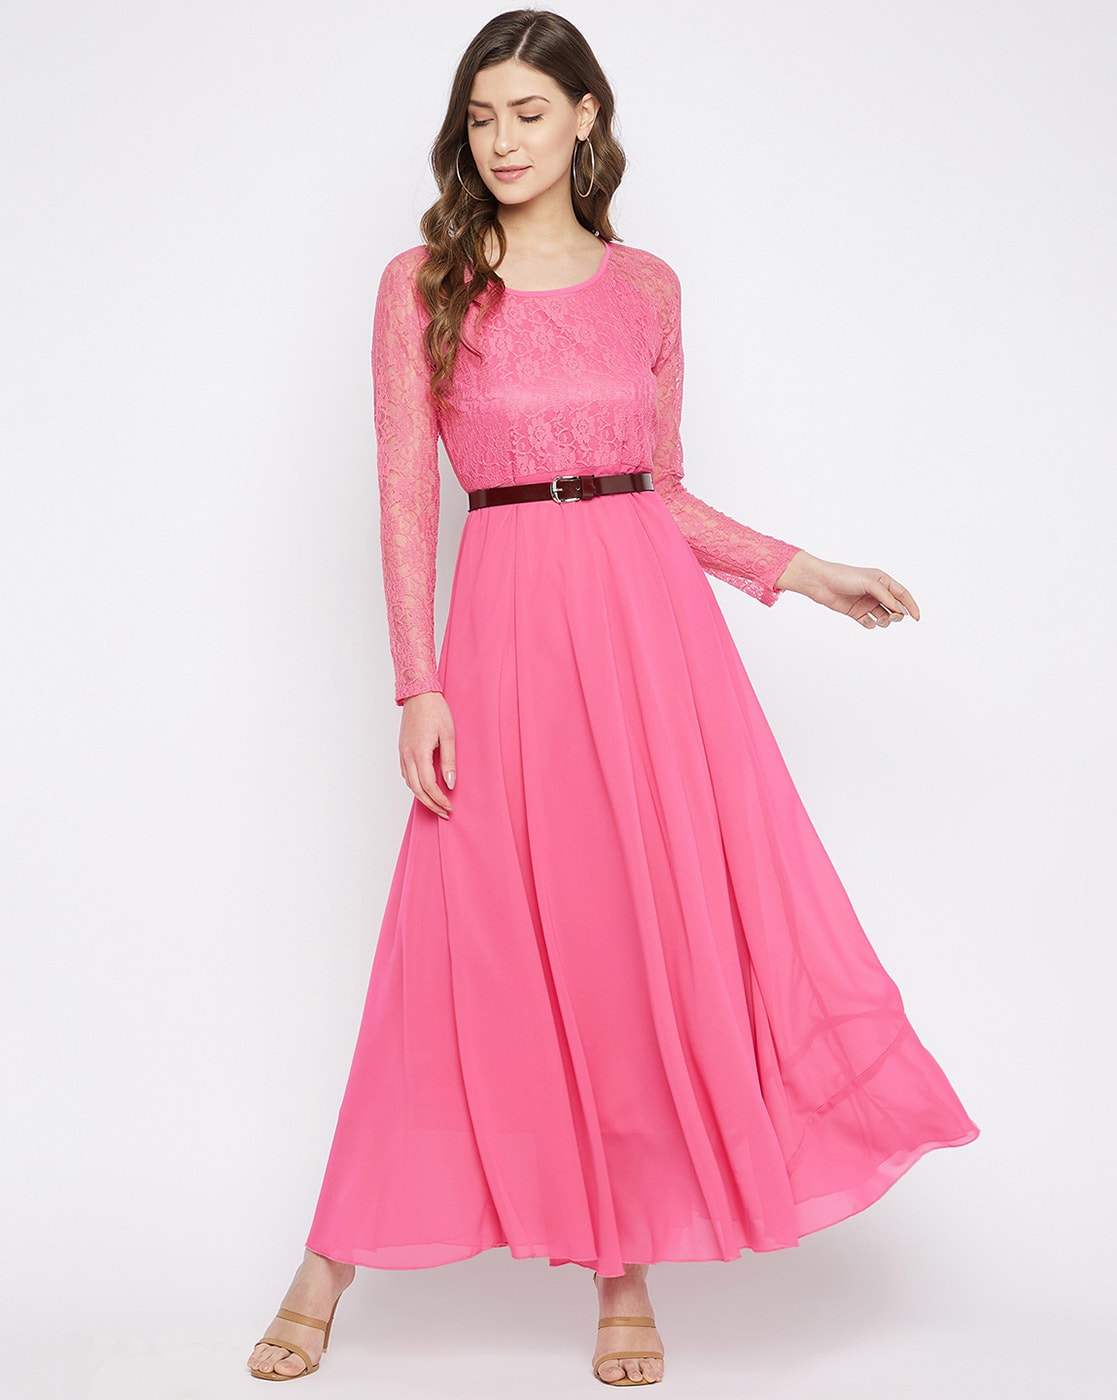 Hot Pink Loose Fit Dress. – CHIKARI